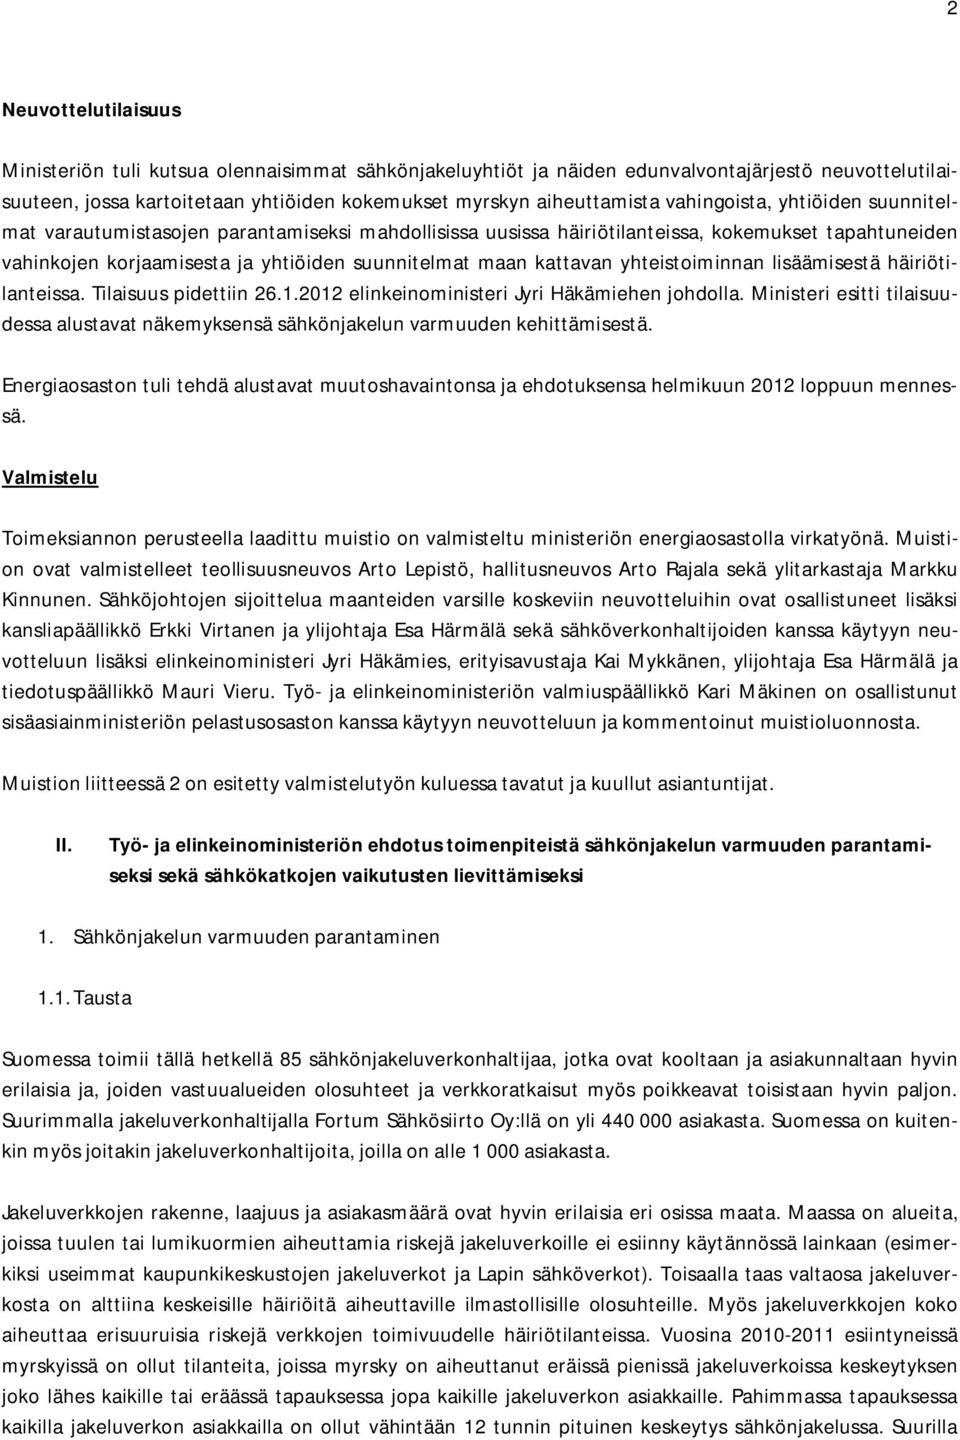 yhteistoiminnan lisäämisestä häiriötilanteissa. Tilaisuus pidettiin 26.1.2012 elinkeinoministeri Jyri Häkämiehen johdolla.